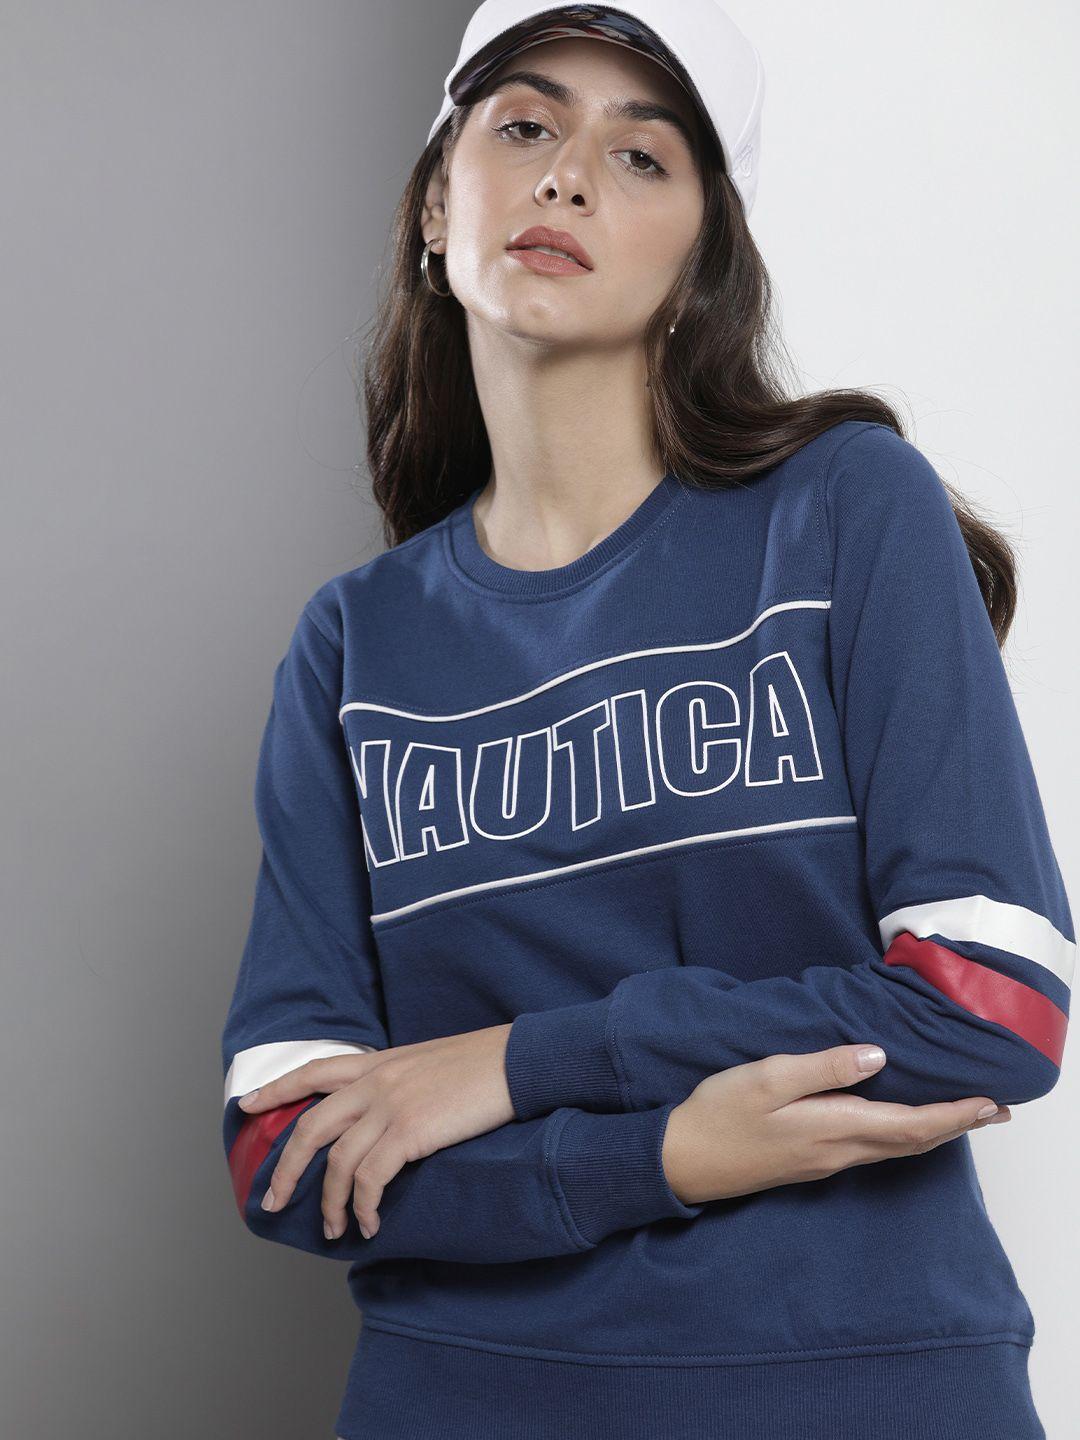 nautica-women-navy-blue-printed-sweatshirt